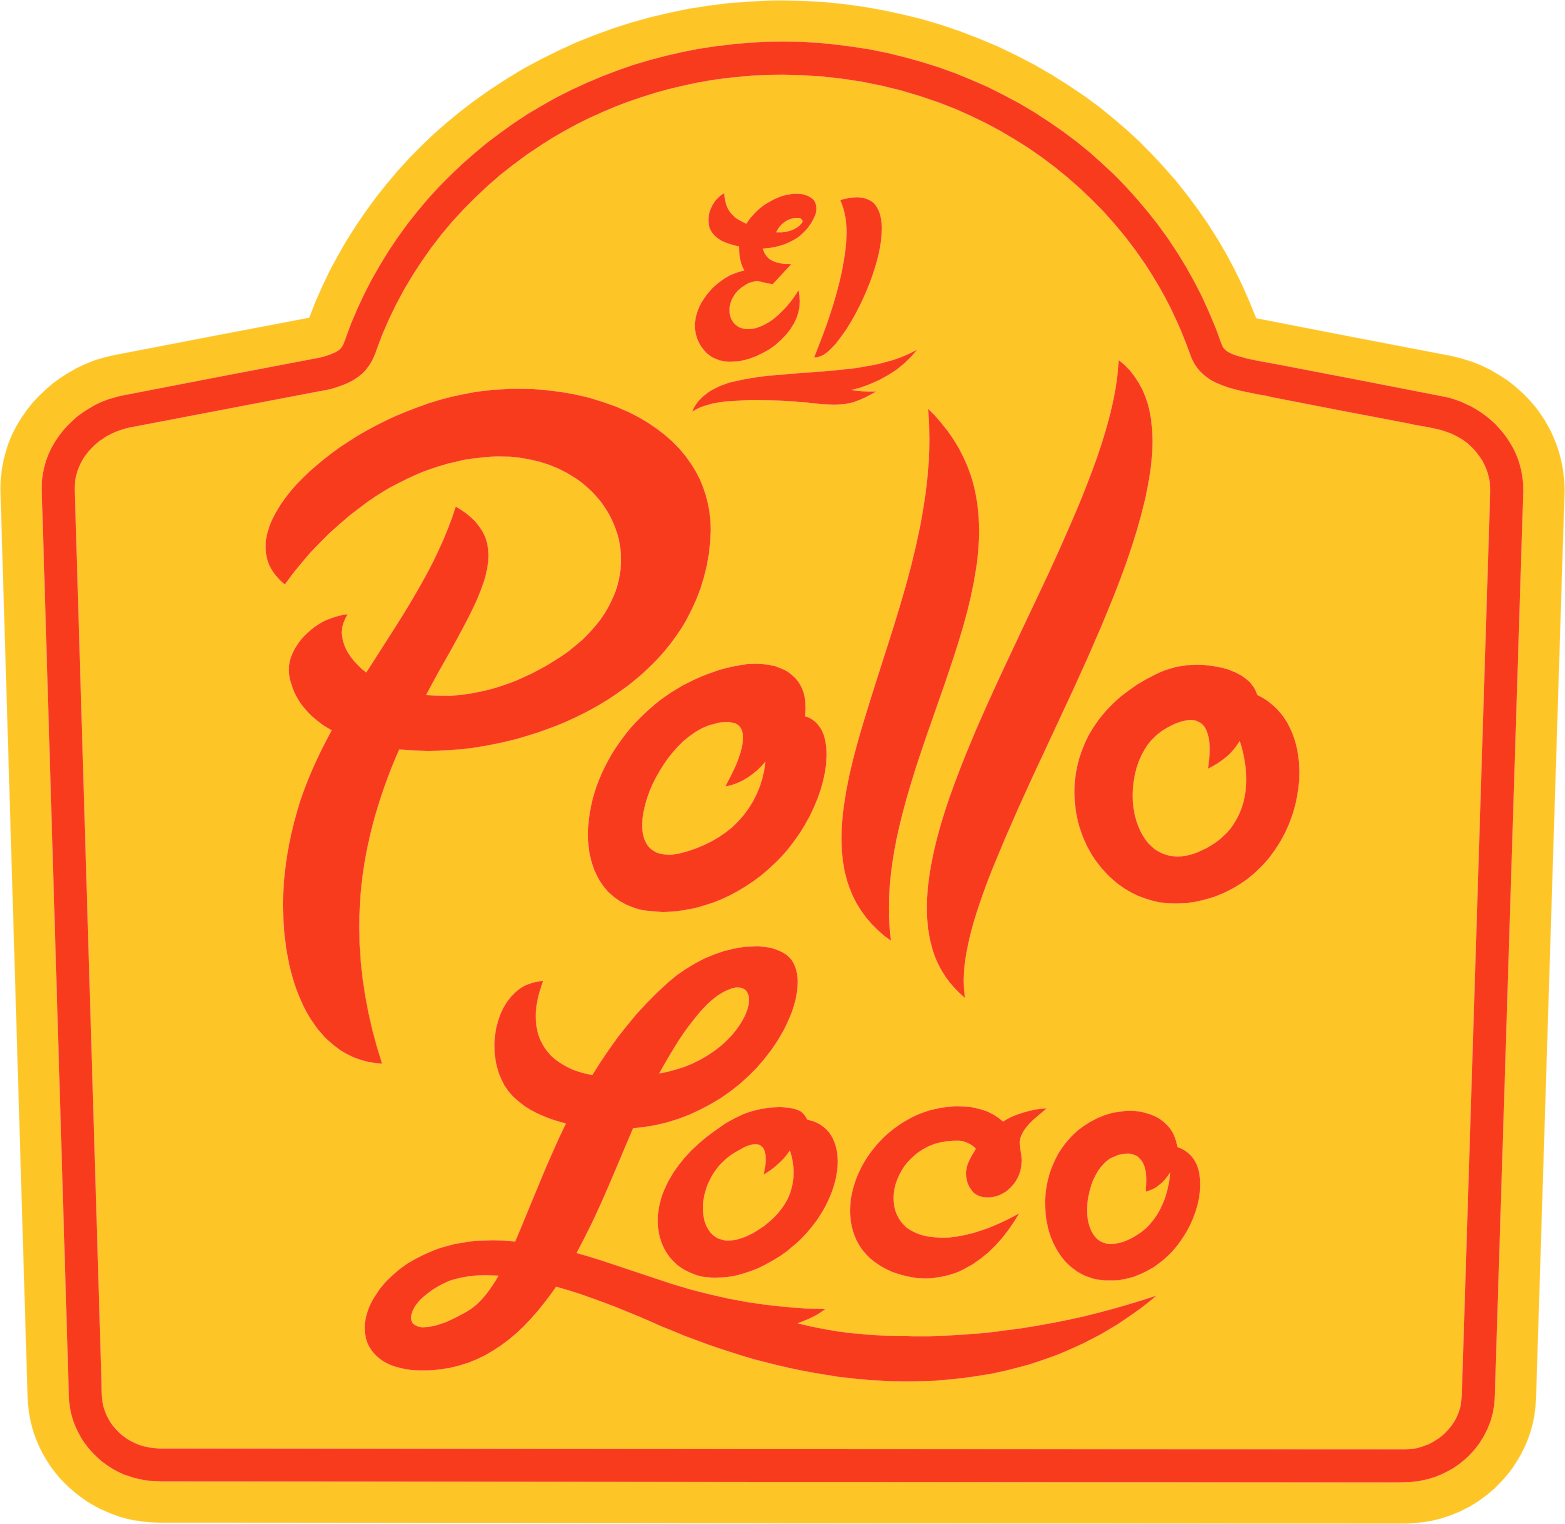 El Pollo Loco
 logo (transparent PNG)